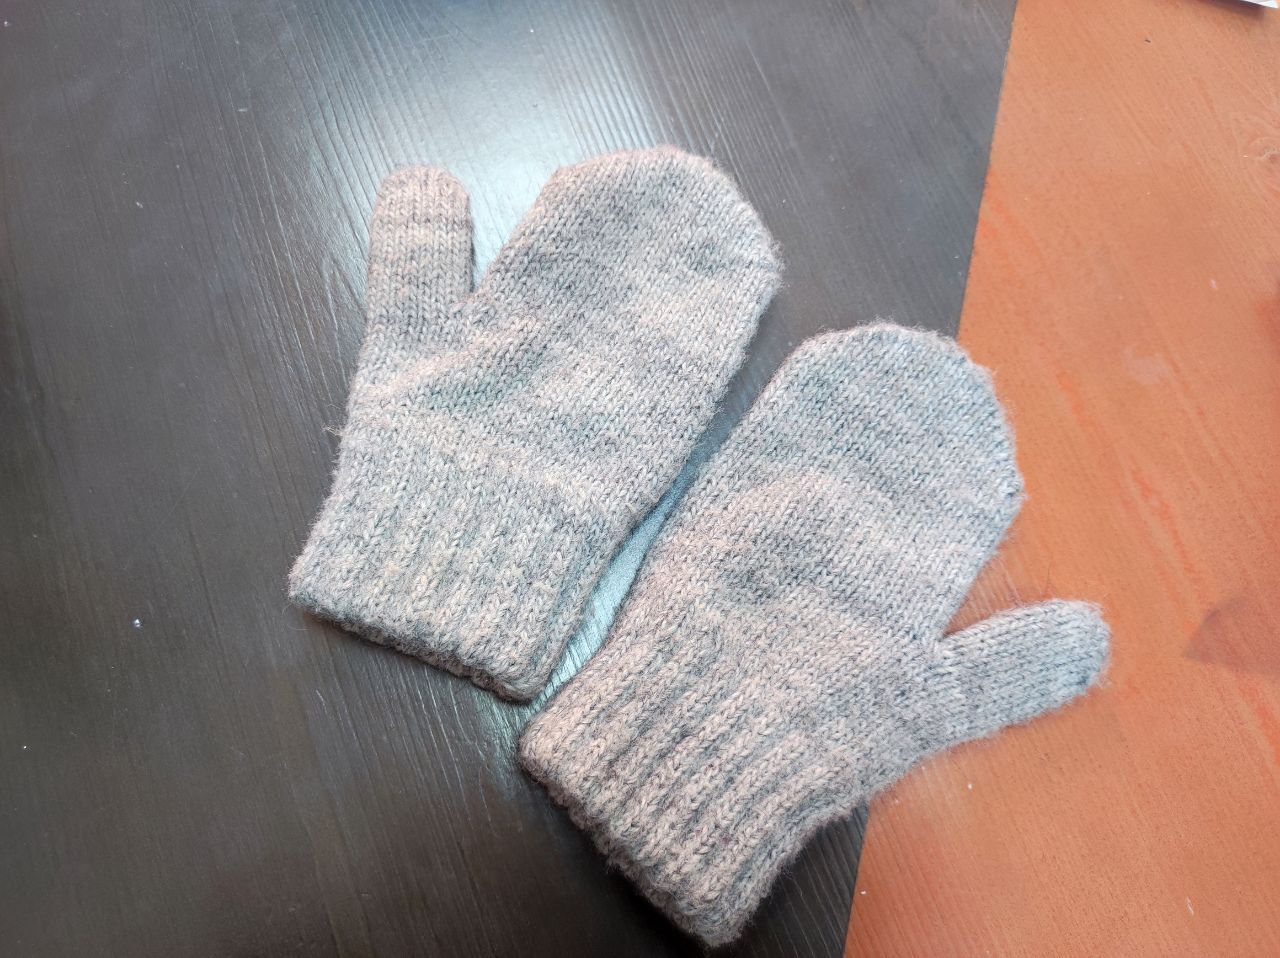 Фото В Улан-Удэ сотрудники «Горсвета» нашли много перчаток и варежек в пункте обогрева